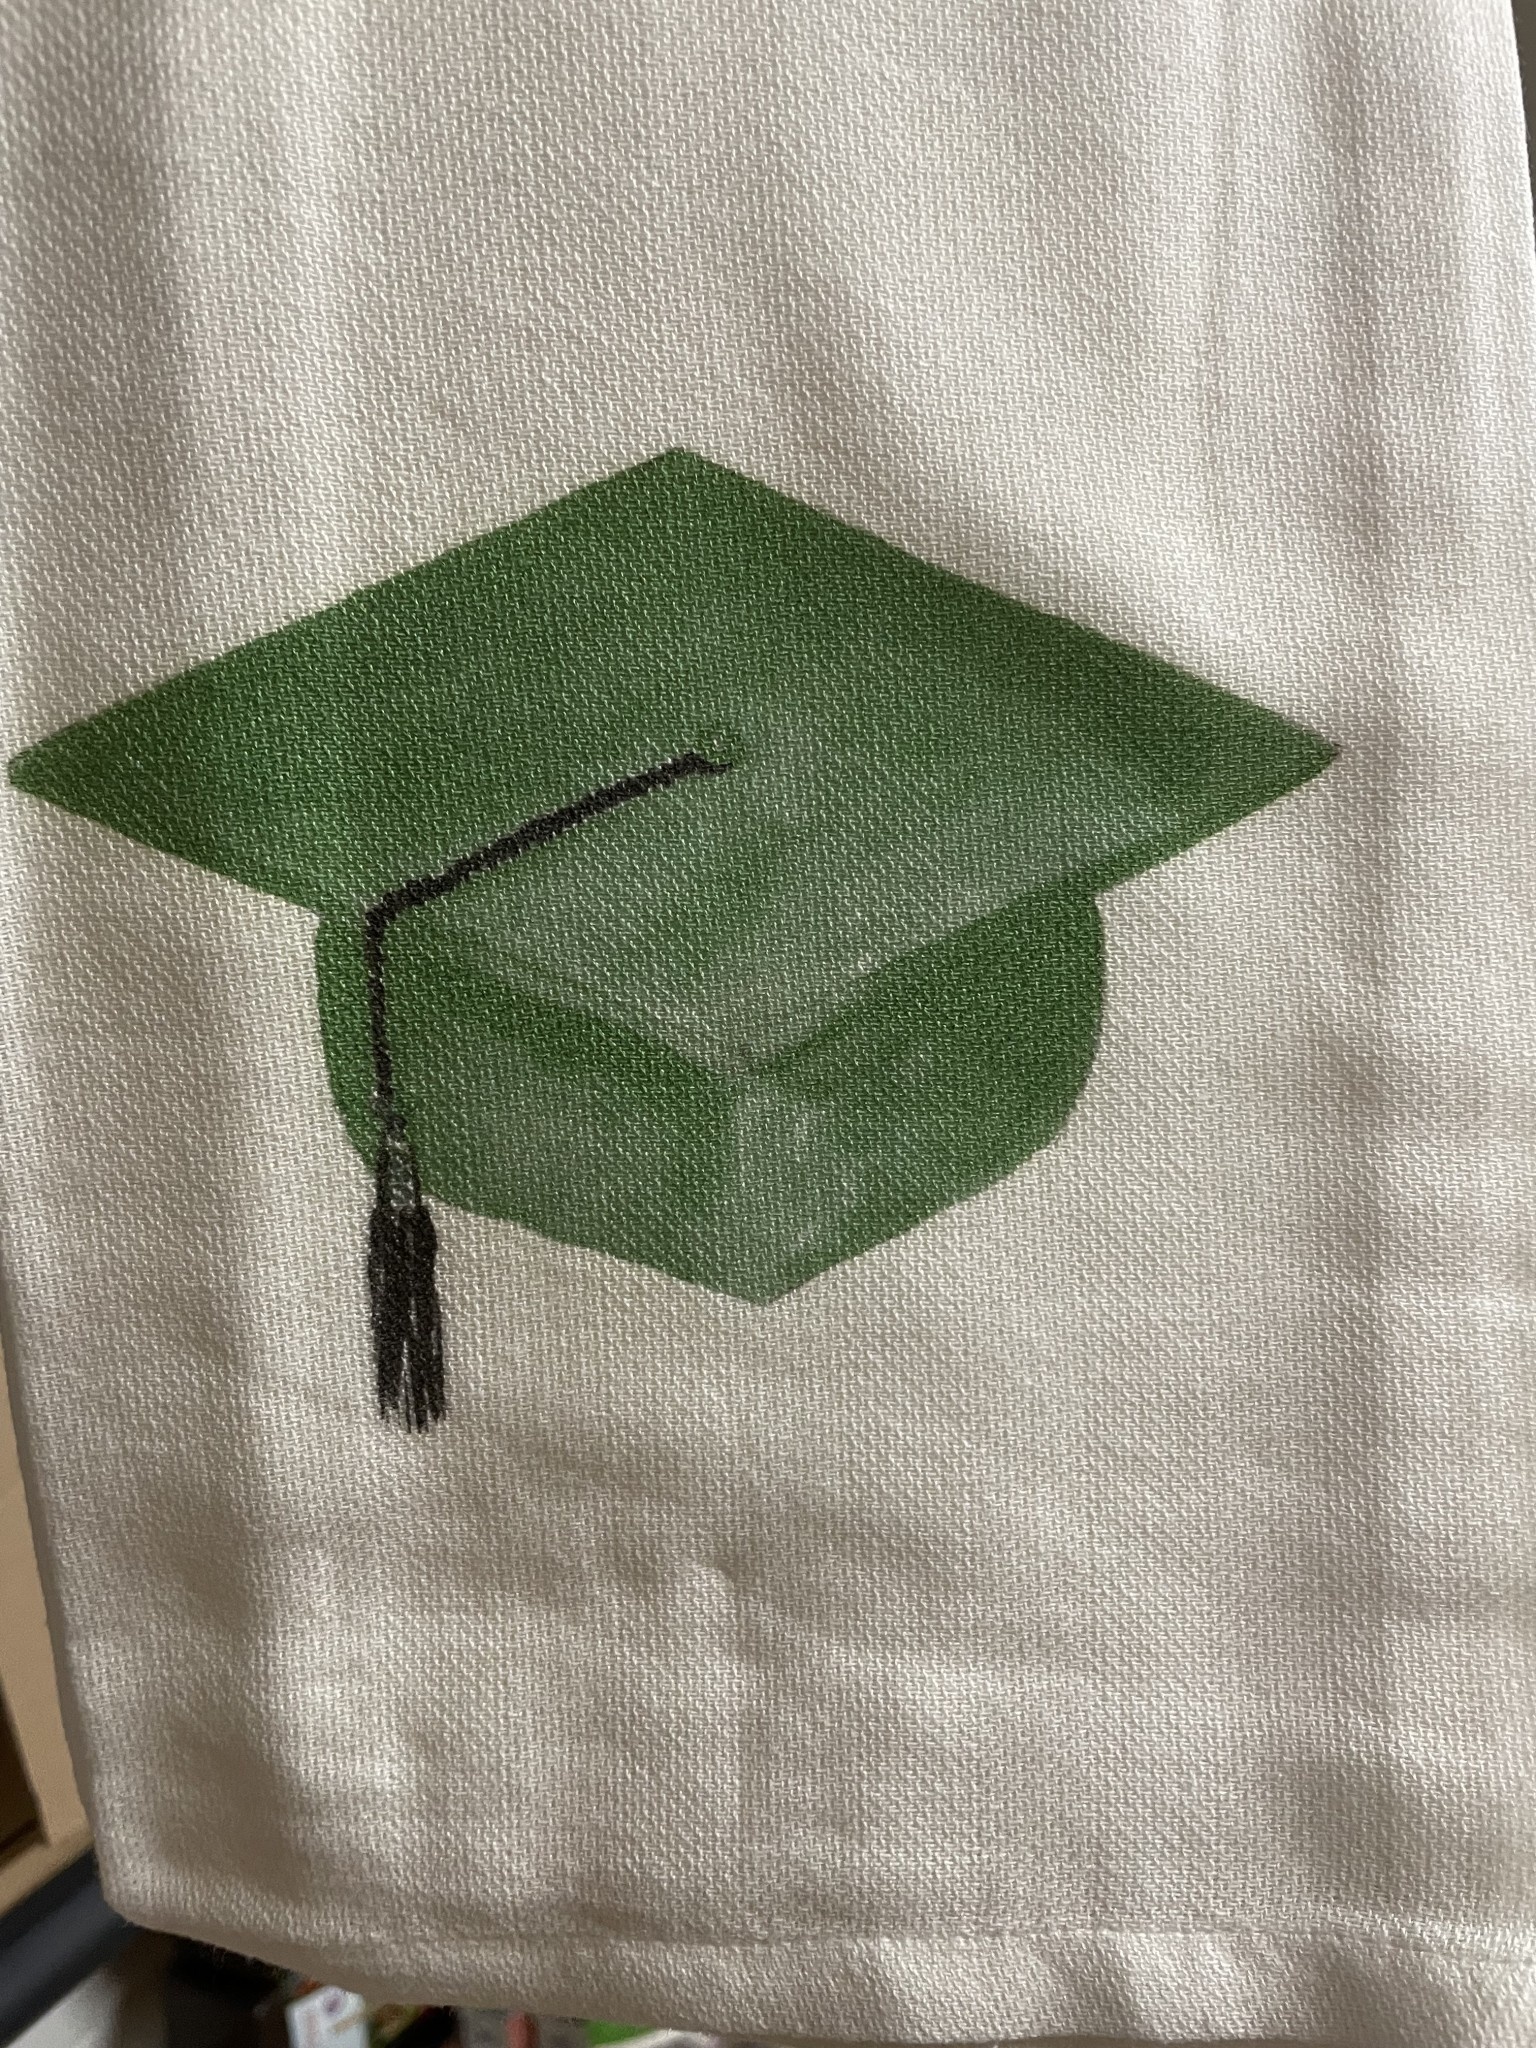 French Graffiti Green Graduation Cap Tea Towel